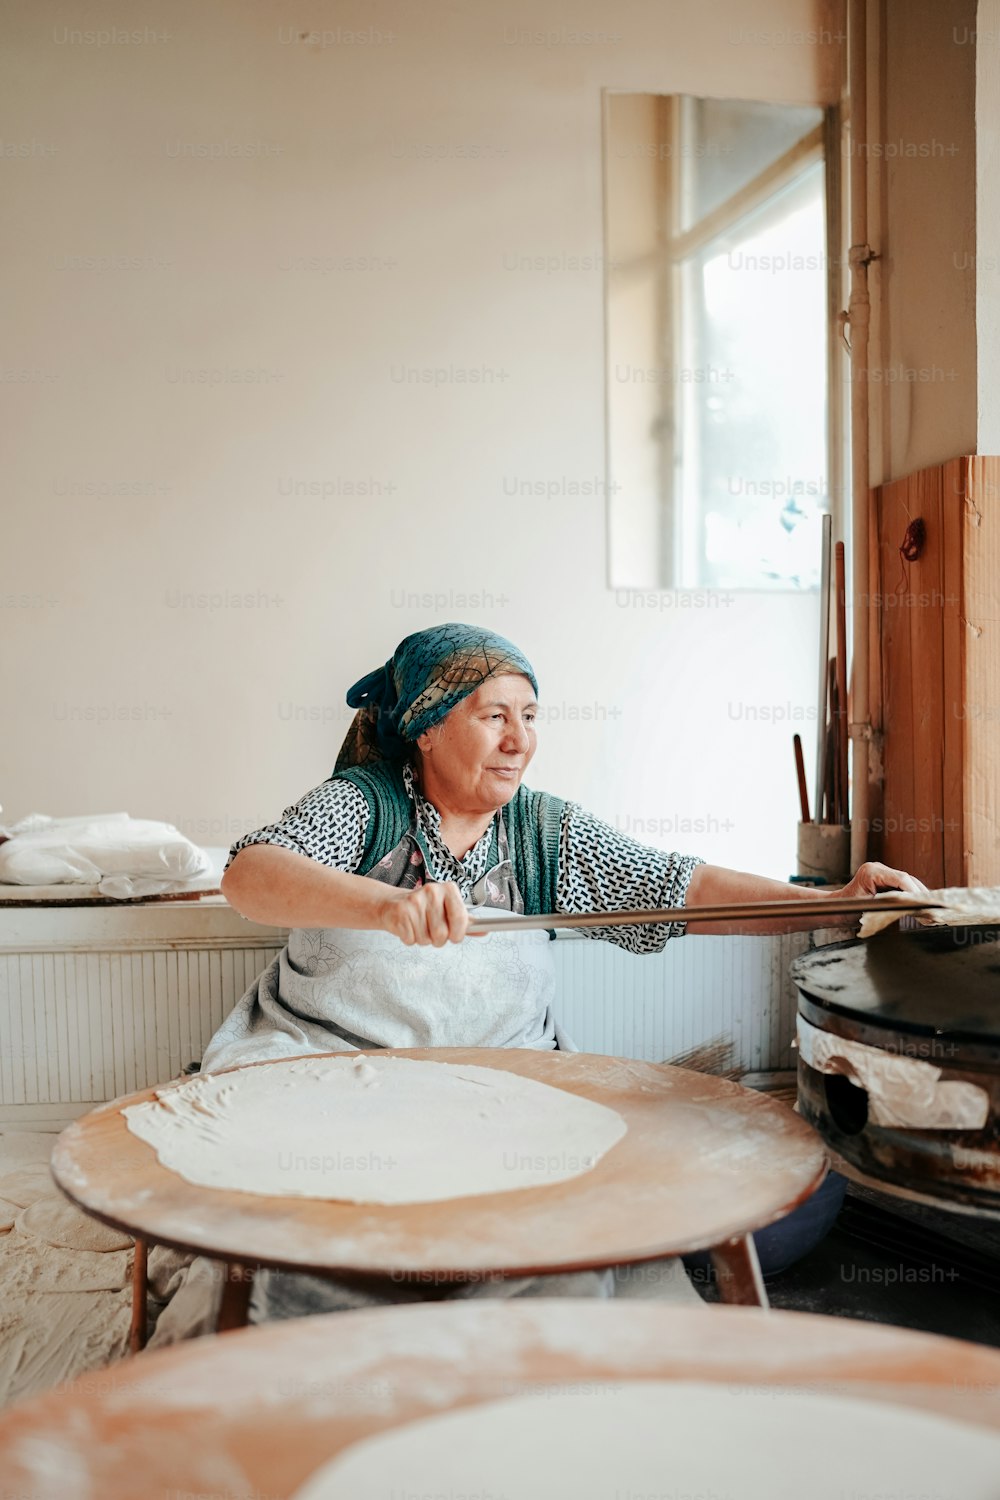 Una mujer en una cocina haciendo una pizza